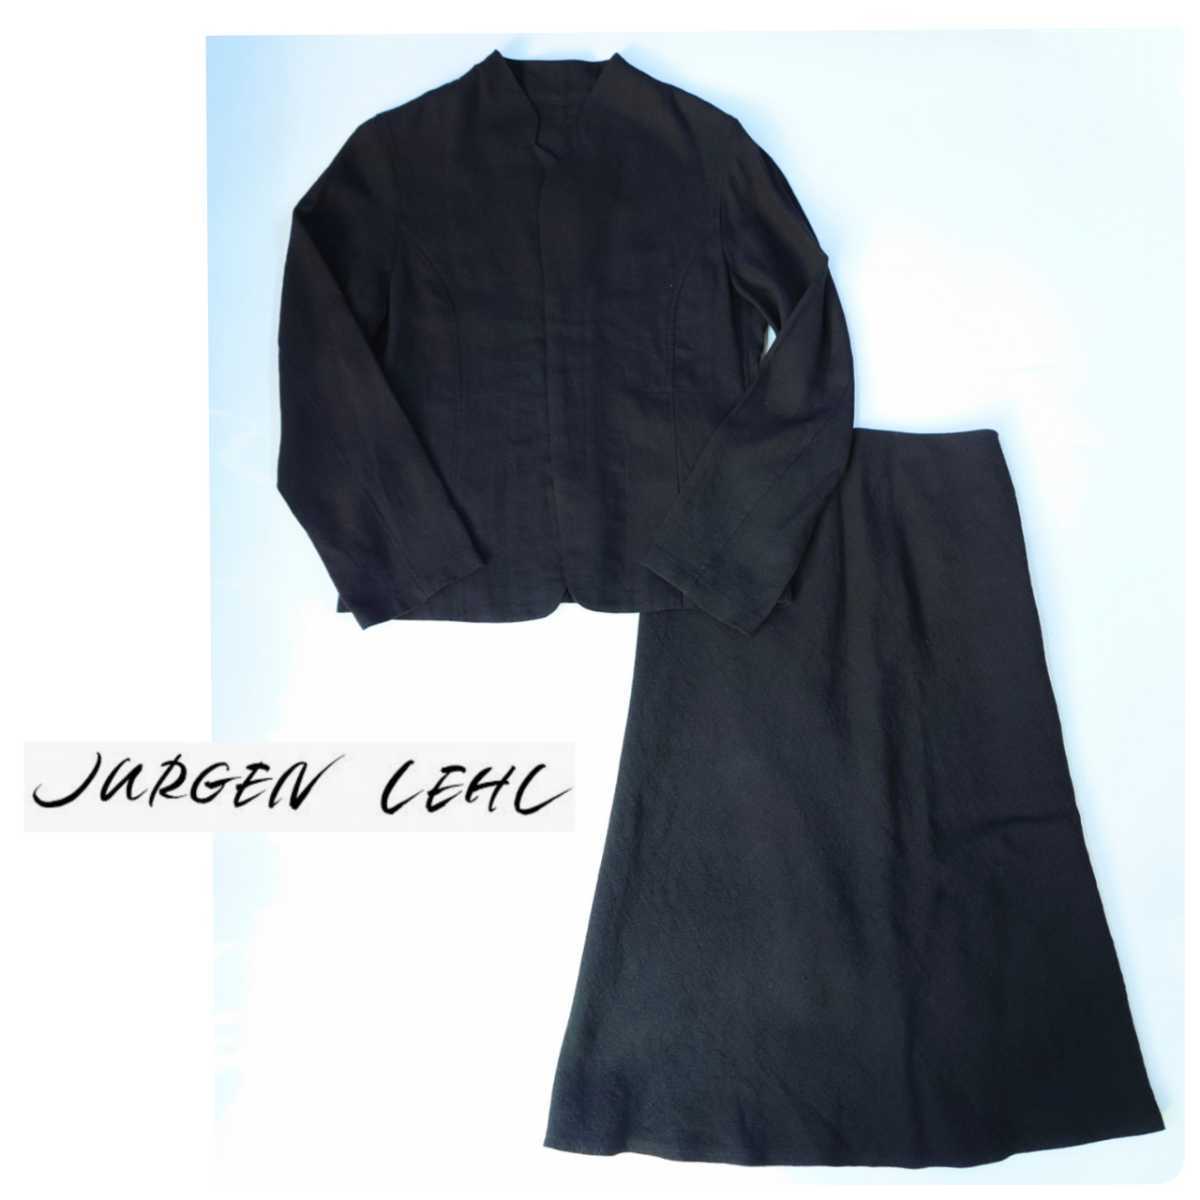 JURGEN LEHL ヨーガンレール 黒 スカートスーツ セットアップ ブラック　M